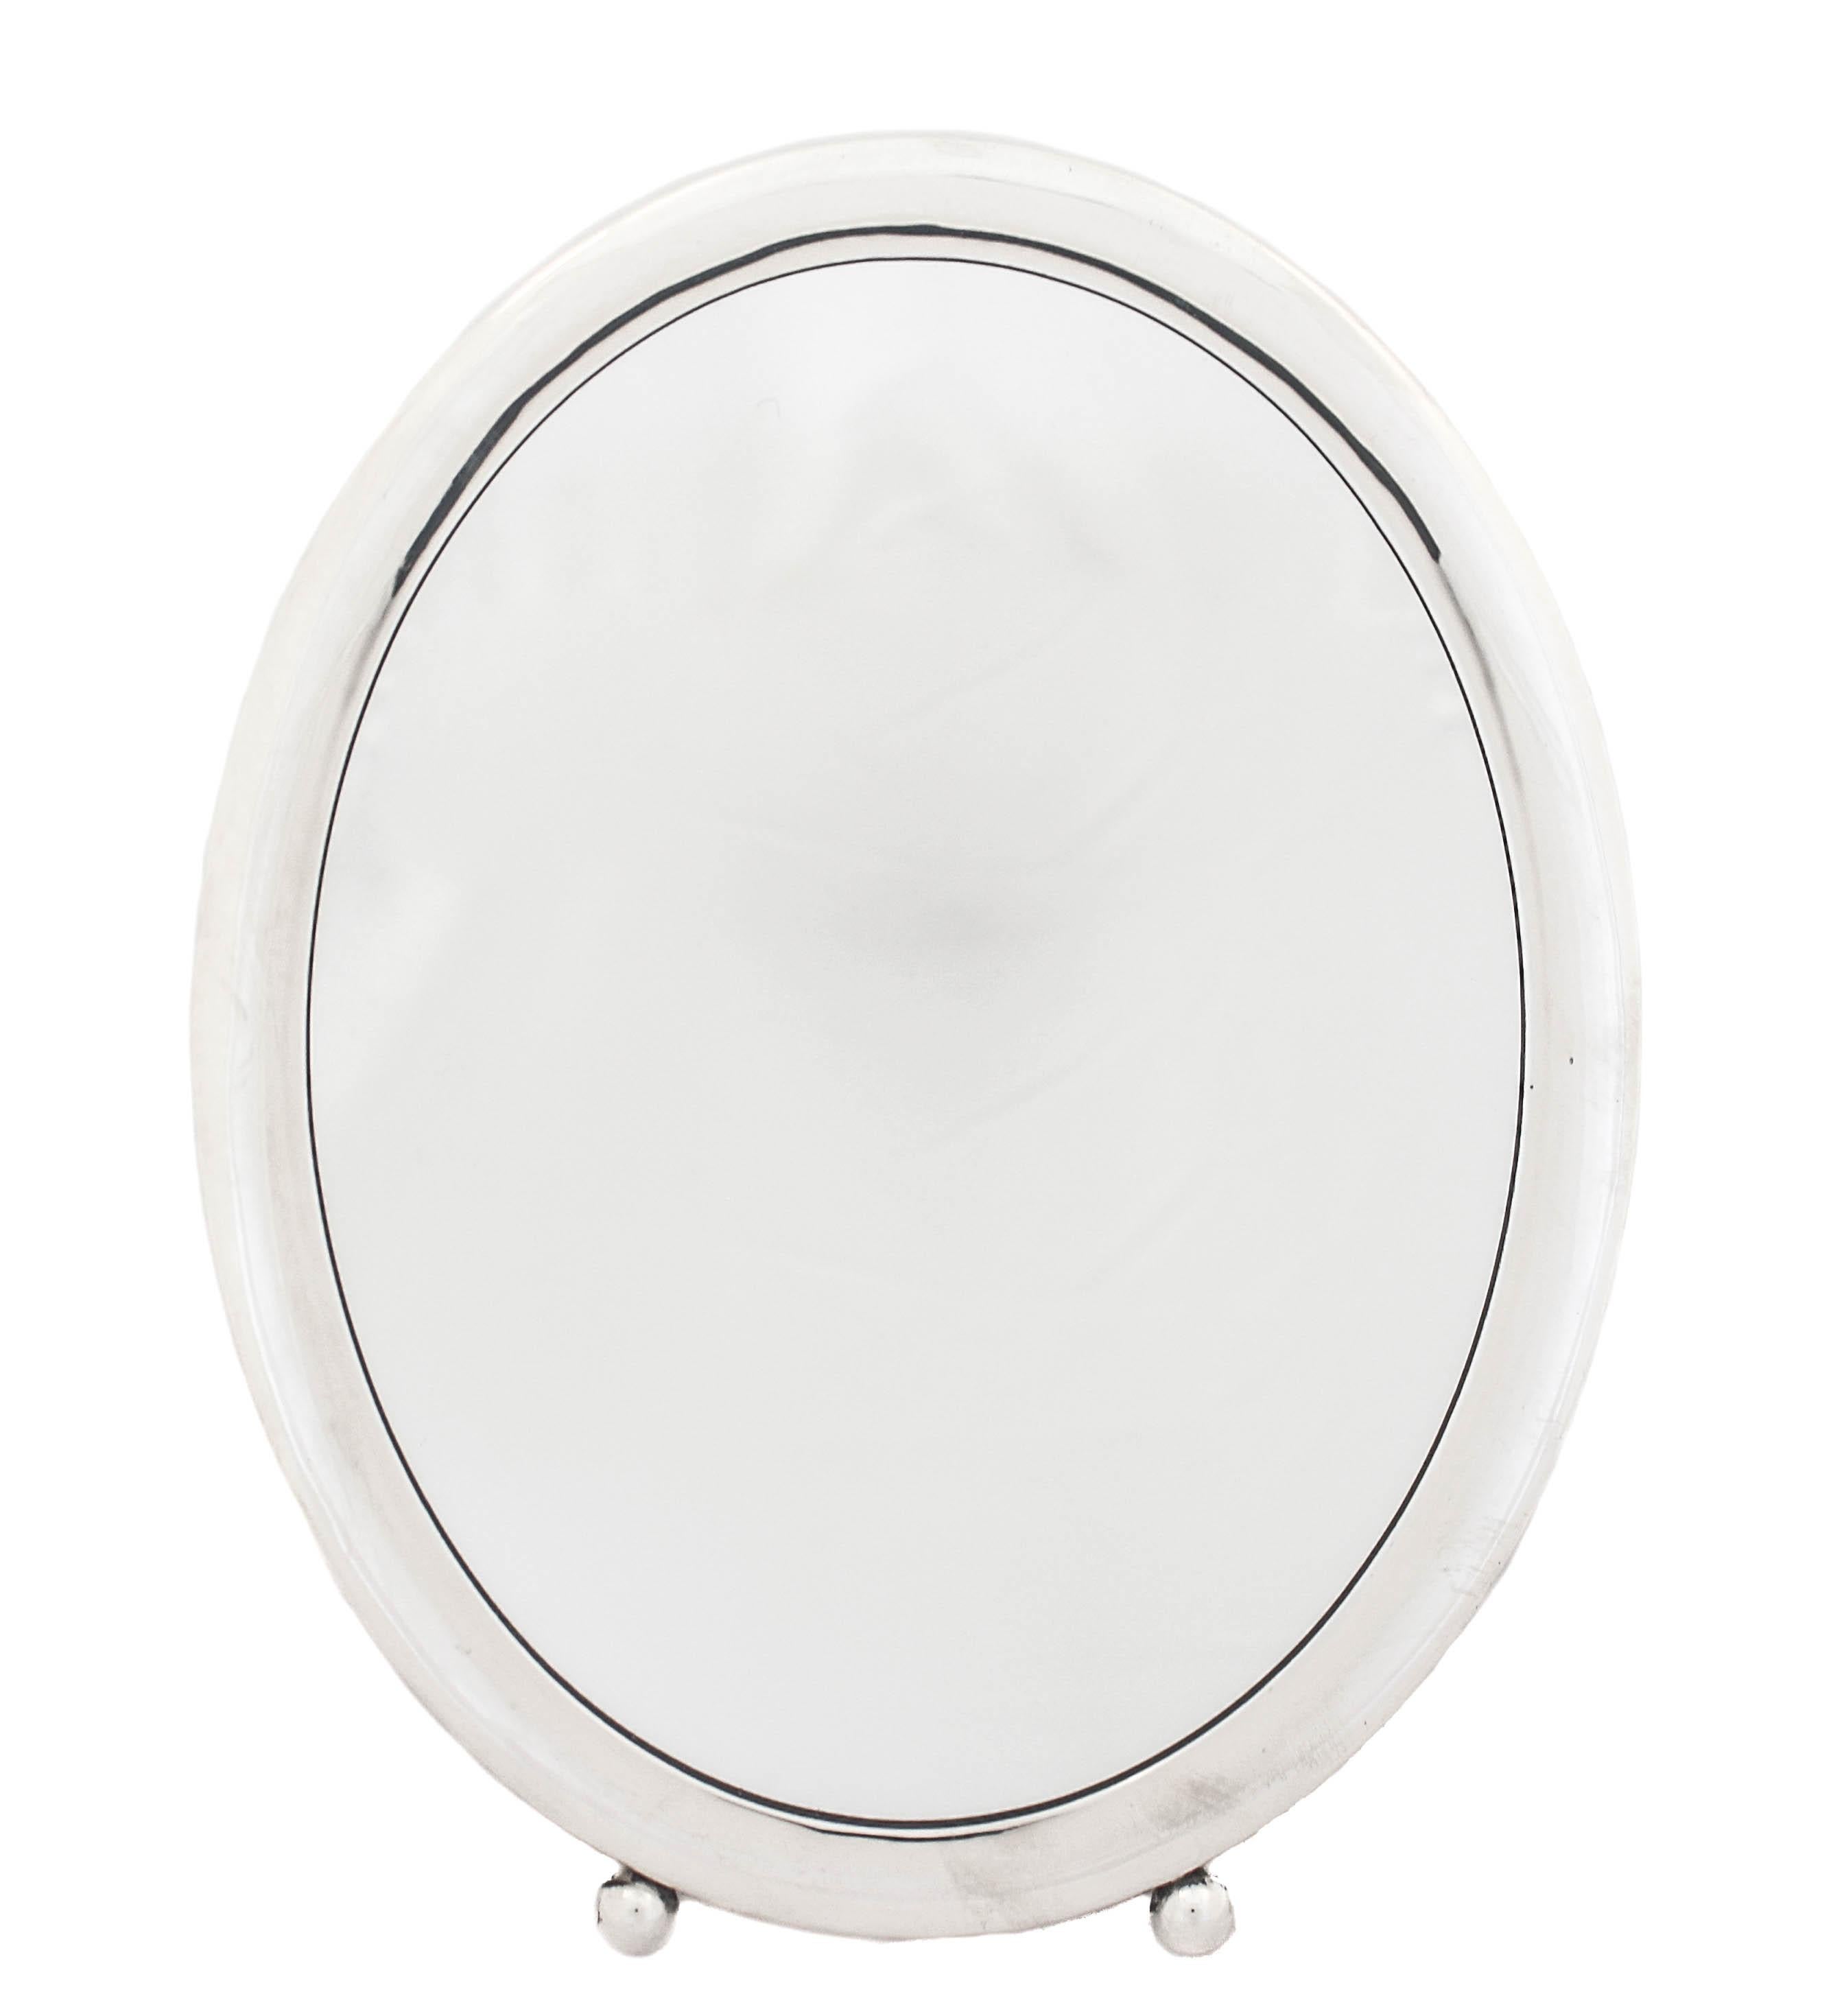 Nous sommes heureux de vous proposer ce miroir de courtoisie Art déco en argent massif.  C'est la taille parfaite pour votre table de toilette - ni trop grande, ni trop petite. Remarquez la forme et les deux boules sur le fond, très Art déco. 